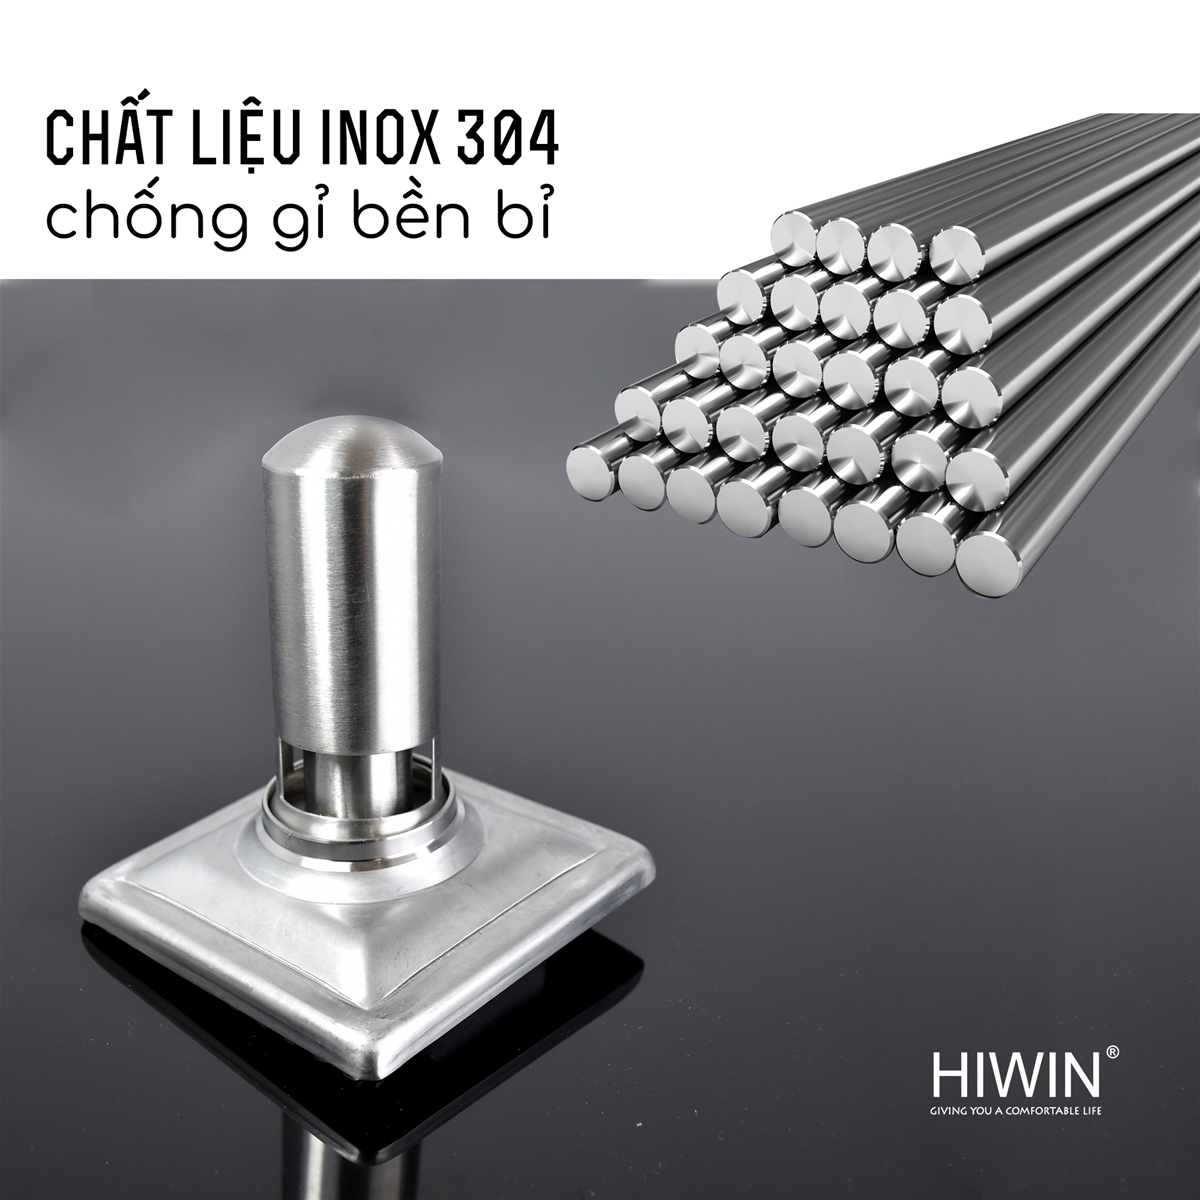 ga thoát sàn Hiwin FD-413B sử dụng chất liệu Inox 304